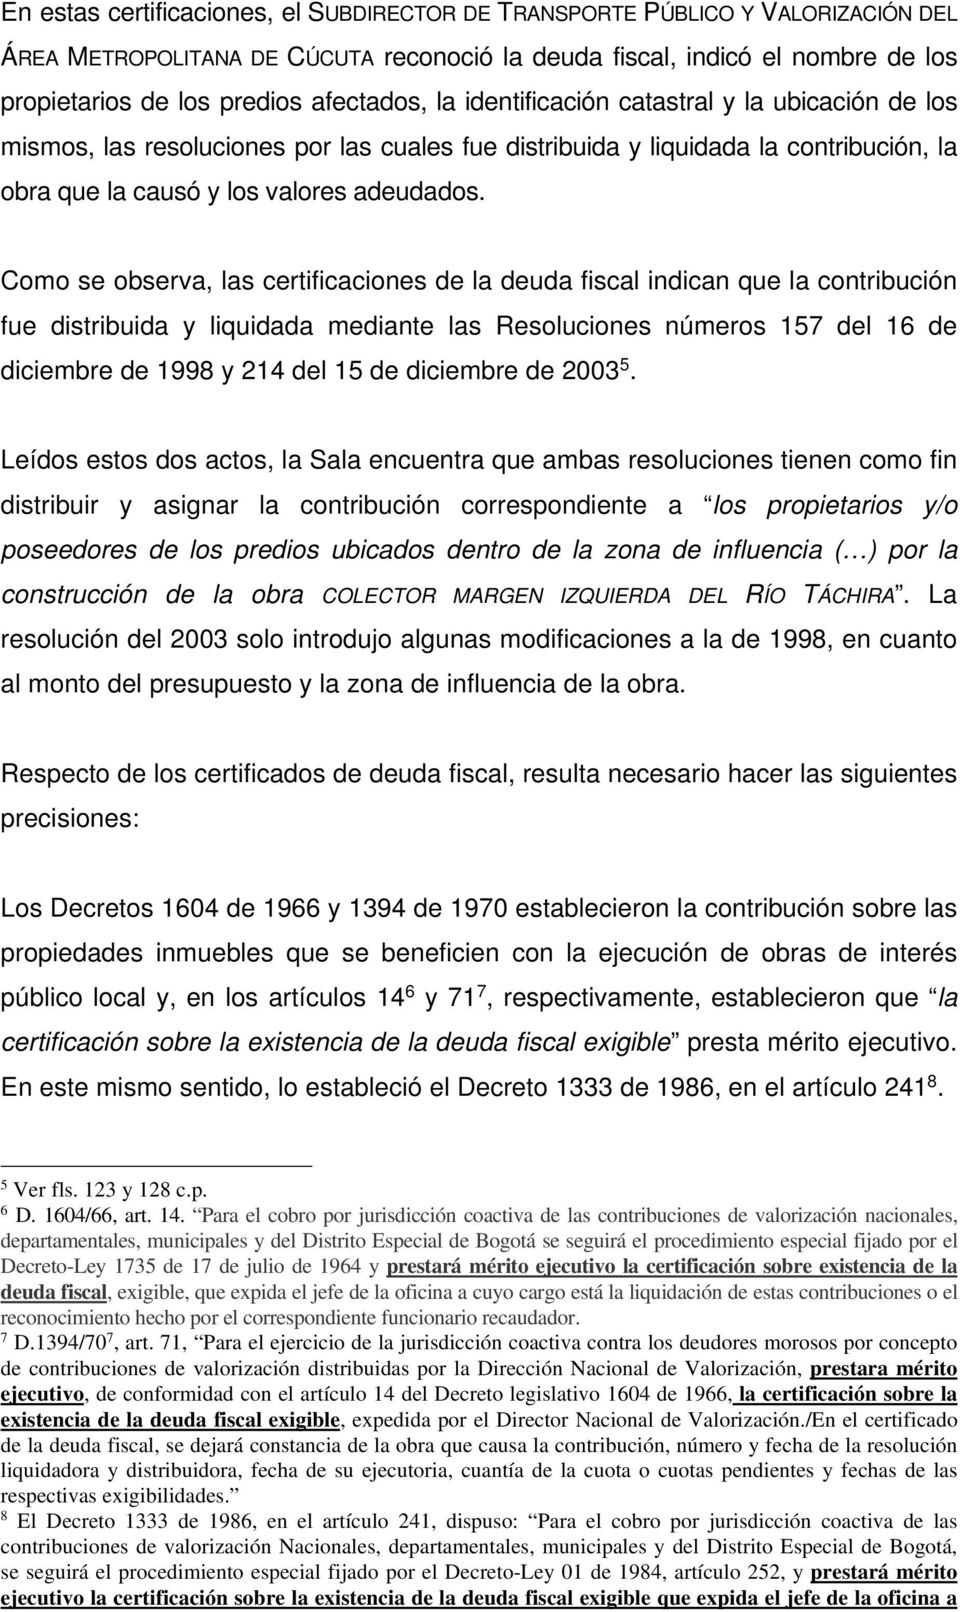 Como se observa, las certificaciones de la deuda fiscal indican que la contribución fue distribuida y liquidada mediante las Resoluciones números 157 del 16 de diciembre de 1998 y 214 del 15 de